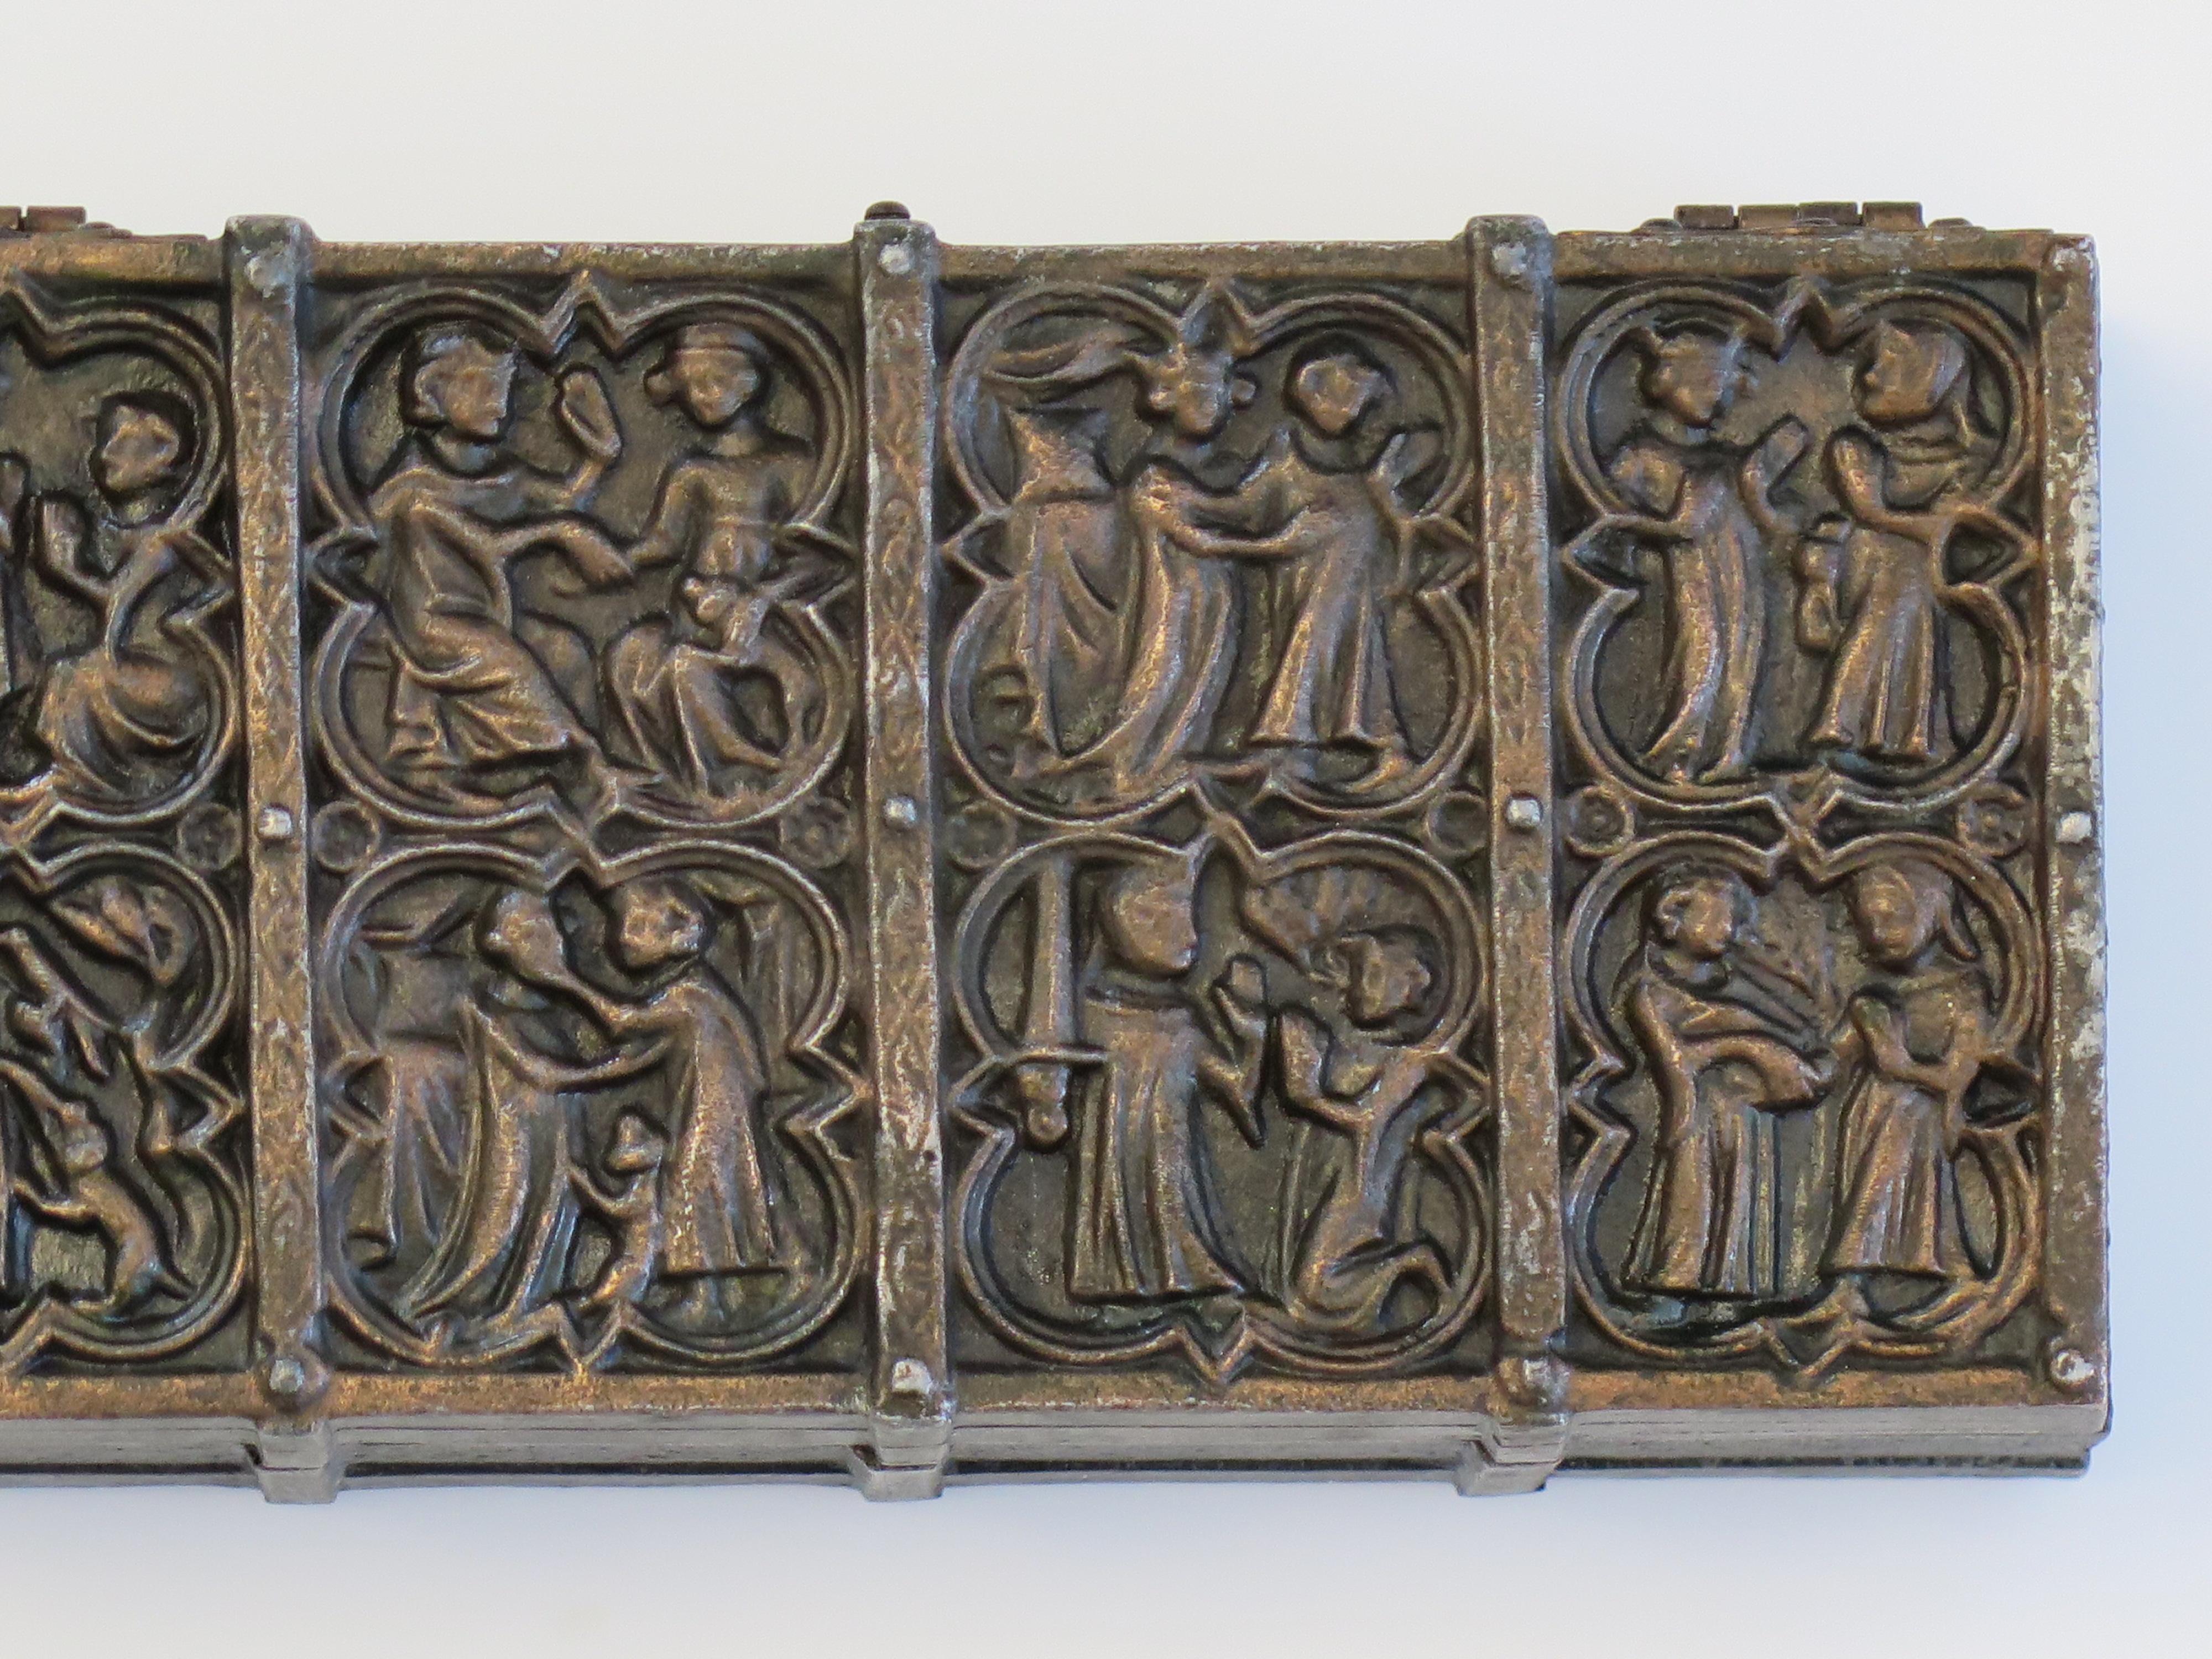 Es handelt sich um eine Metallbox aus Bronzeguss, die als Sarg mit Holzeinlage und  die mittelalterliche Szenen darstellen. Wir datieren diesen Kasten auf das späte 19. Jahrhundert. 

Das Kästchen ist aus Metallguss (Bronze) in Form einer